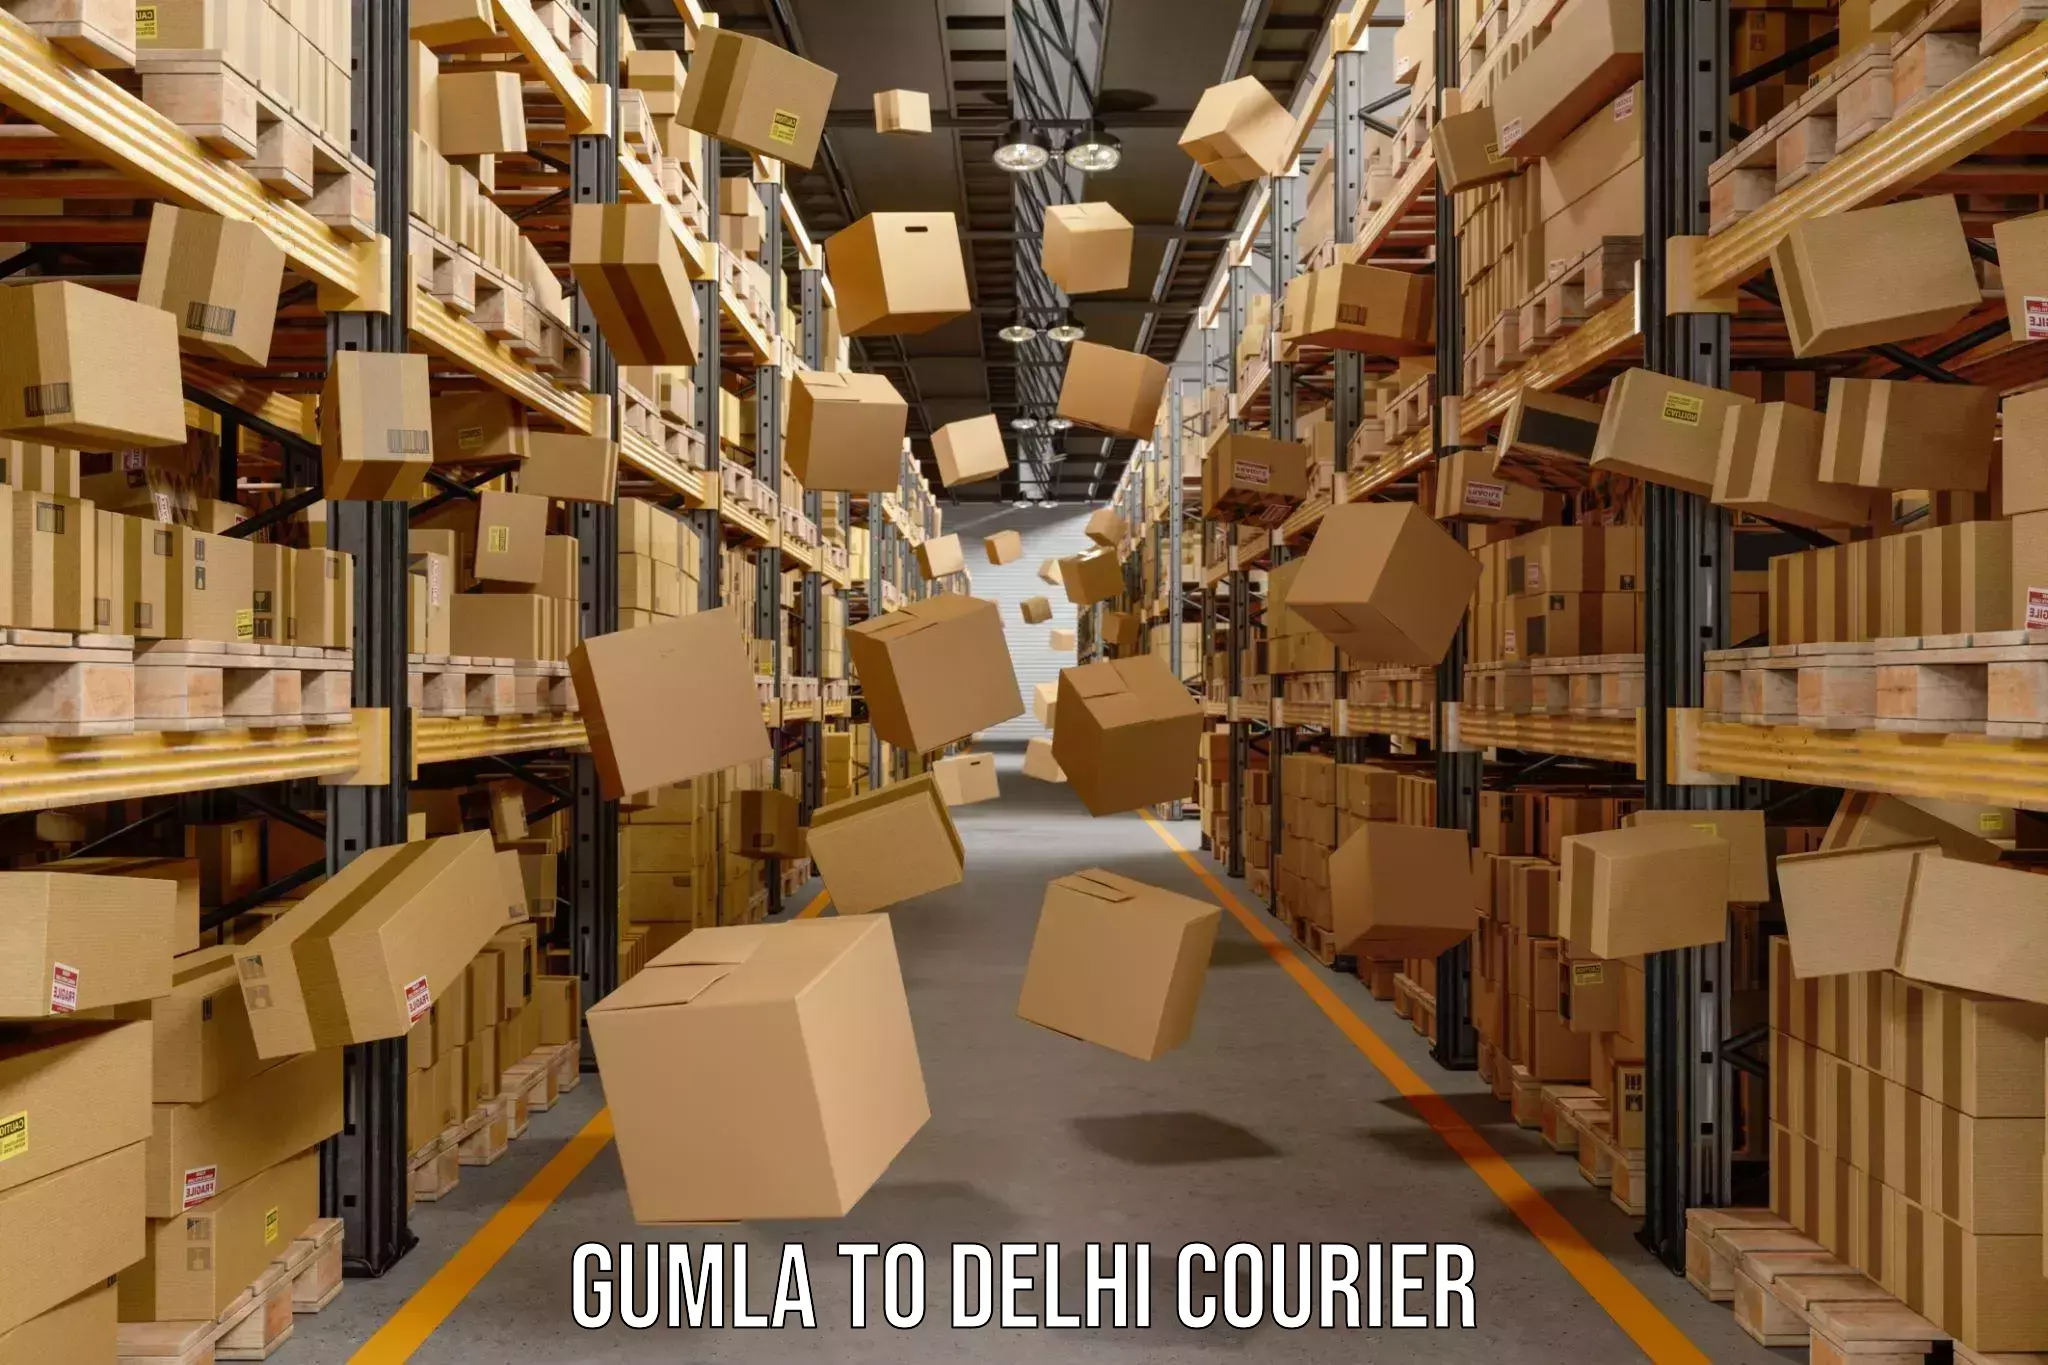 Customer-friendly courier services Gumla to Jawaharlal Nehru University New Delhi